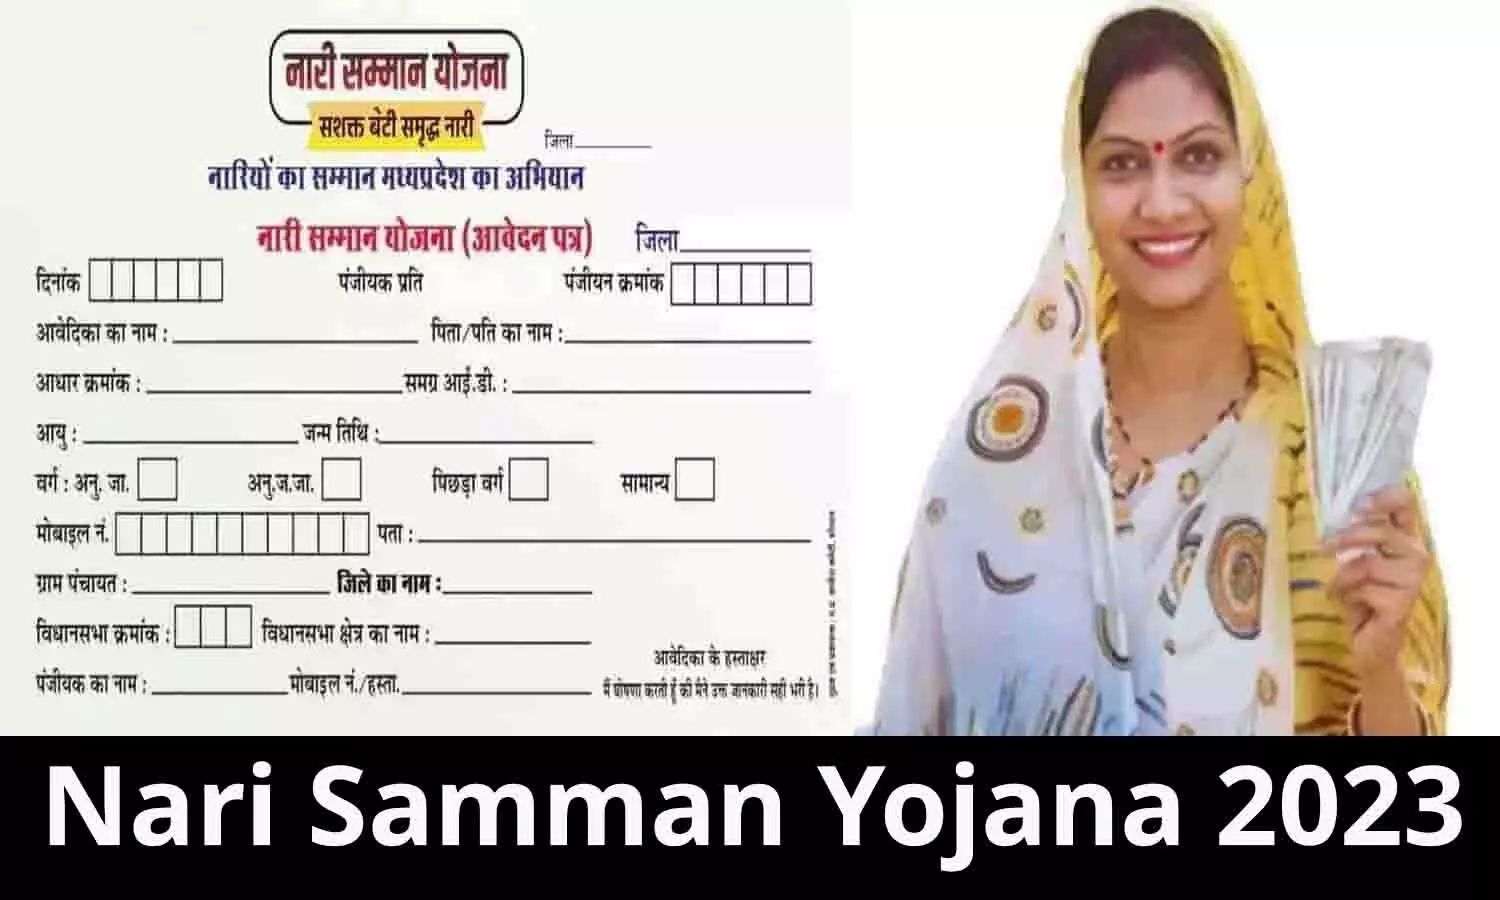 Nari Samman Yojana Ka Form Kaise Bhare: नारी सम्मान योजना का फॉर्म कैसे भरेगा?